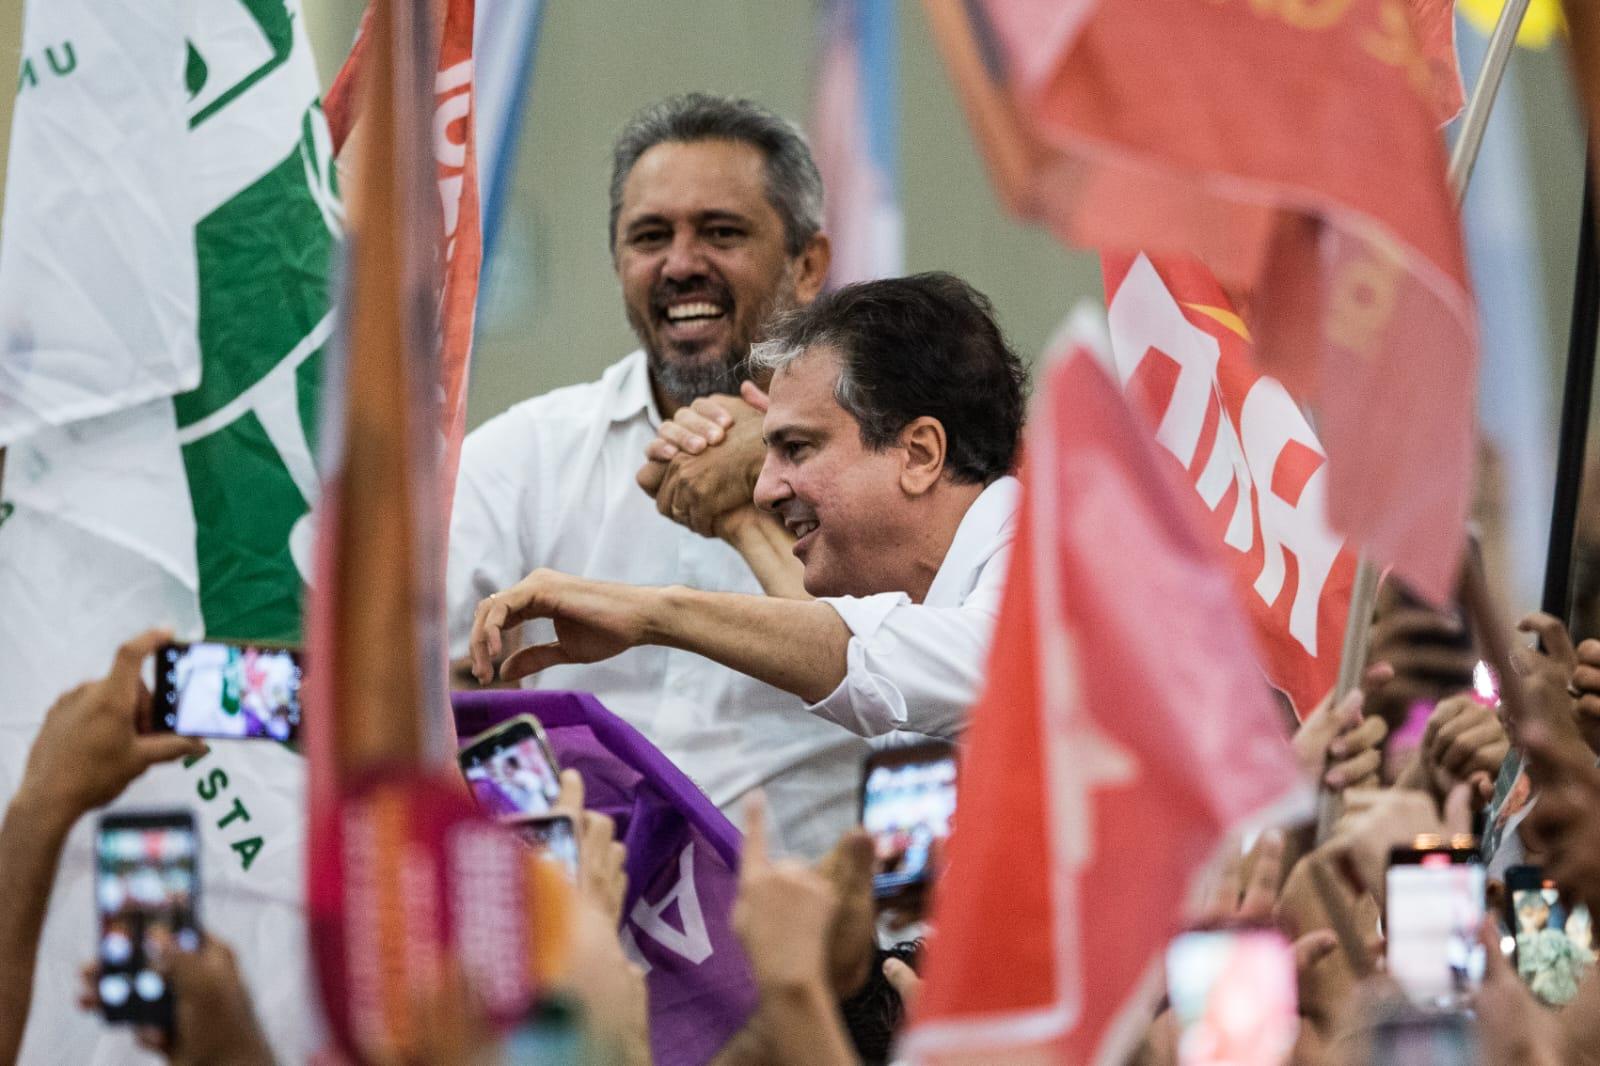 Camilo Santana e Elmano de Freitas são carregados nos braços por apoiadores no Centro de Eventos do Ceará